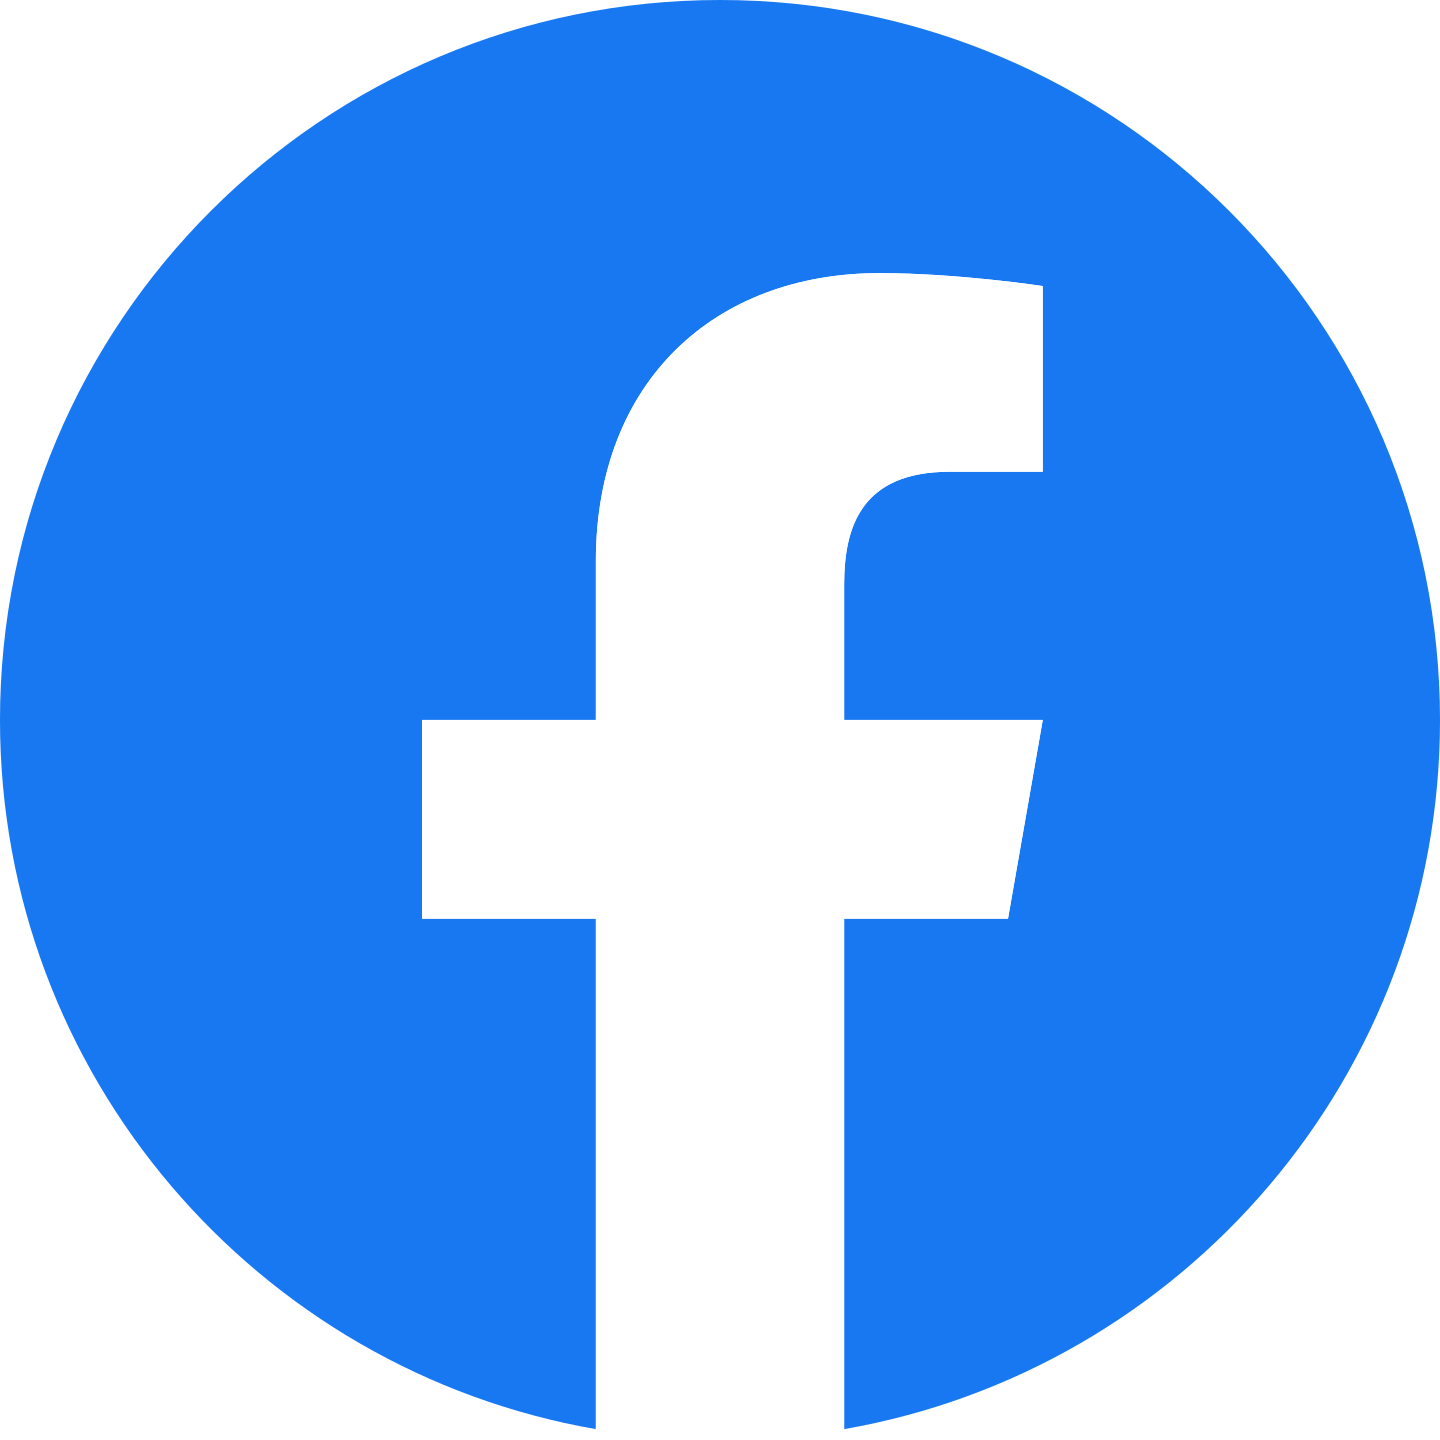 Logo do Facebook com a letra F na cor branca e um círculo azul